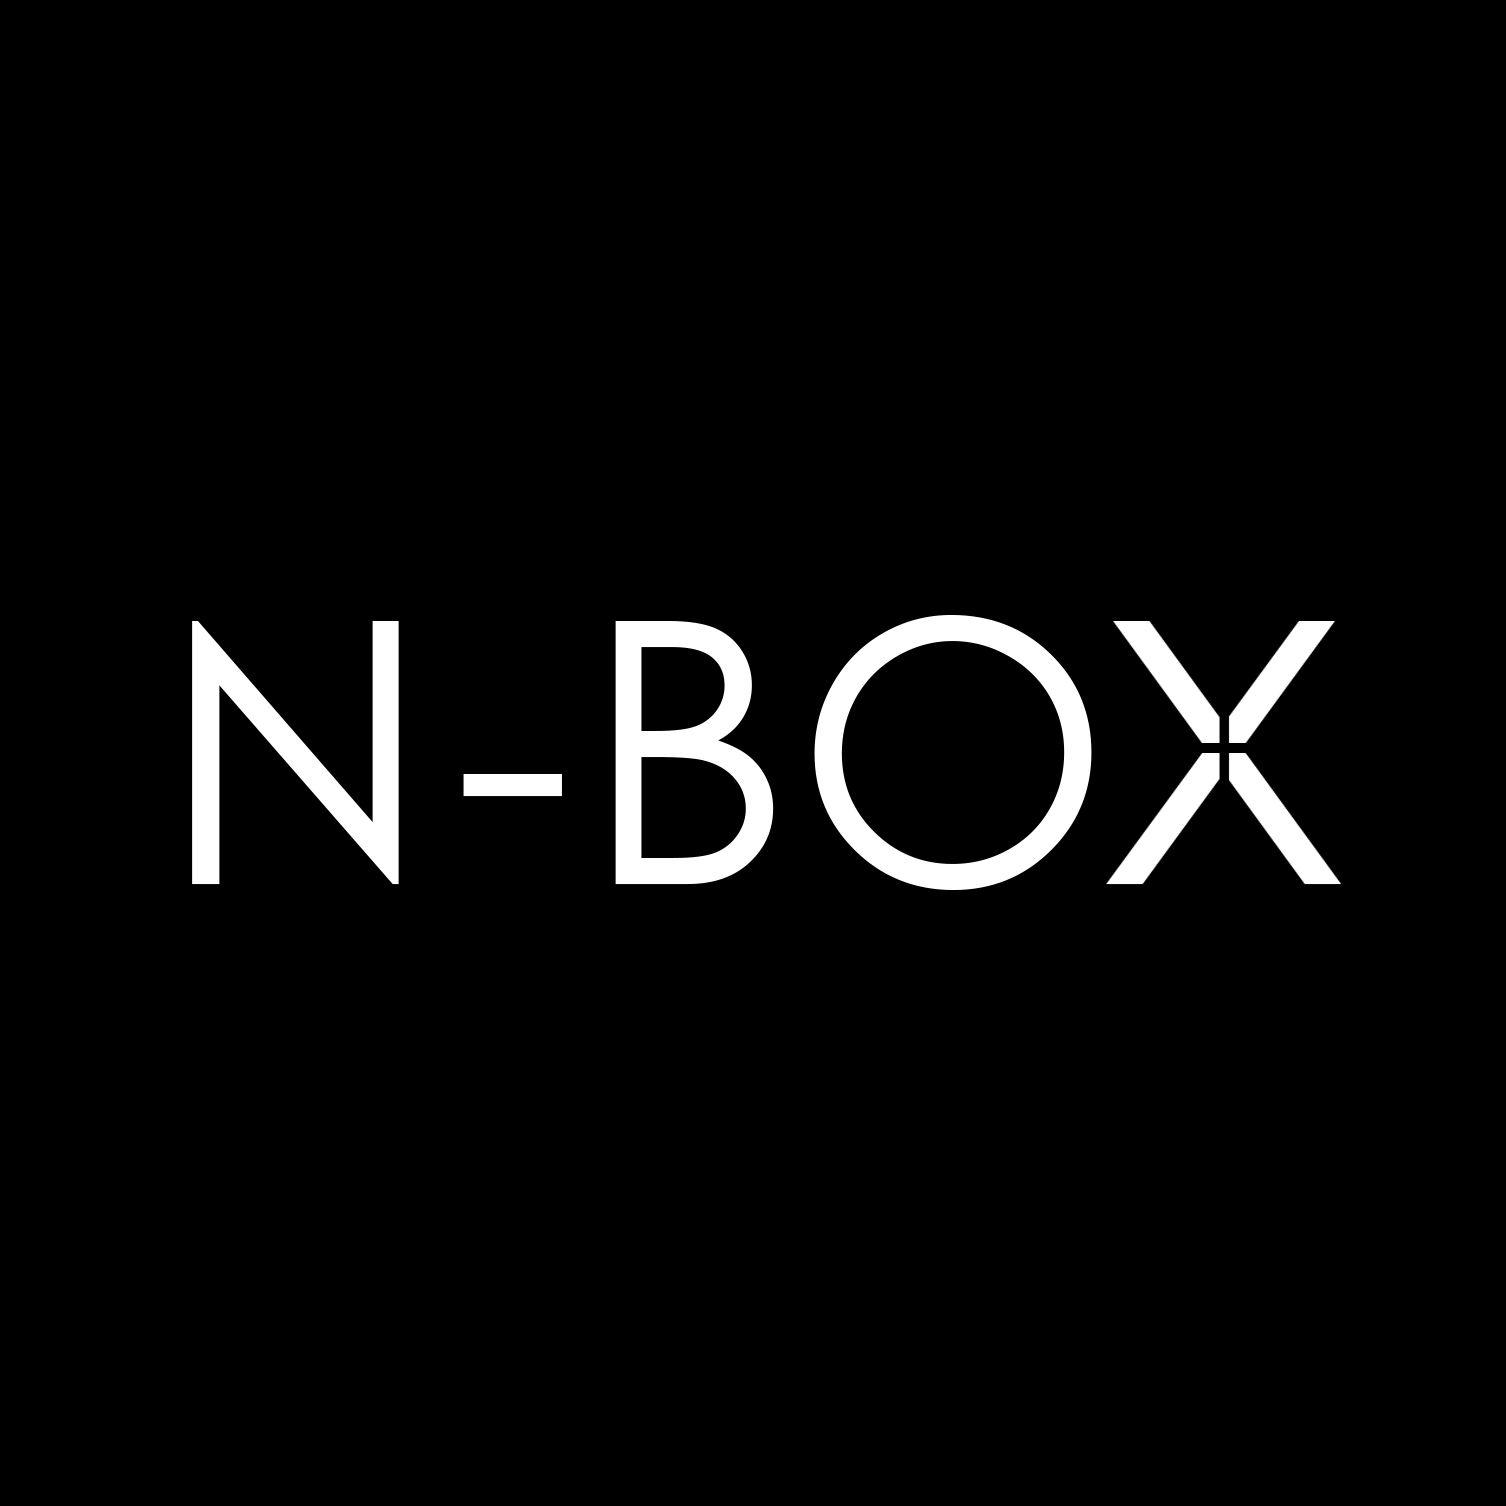 NBOX Visual Team